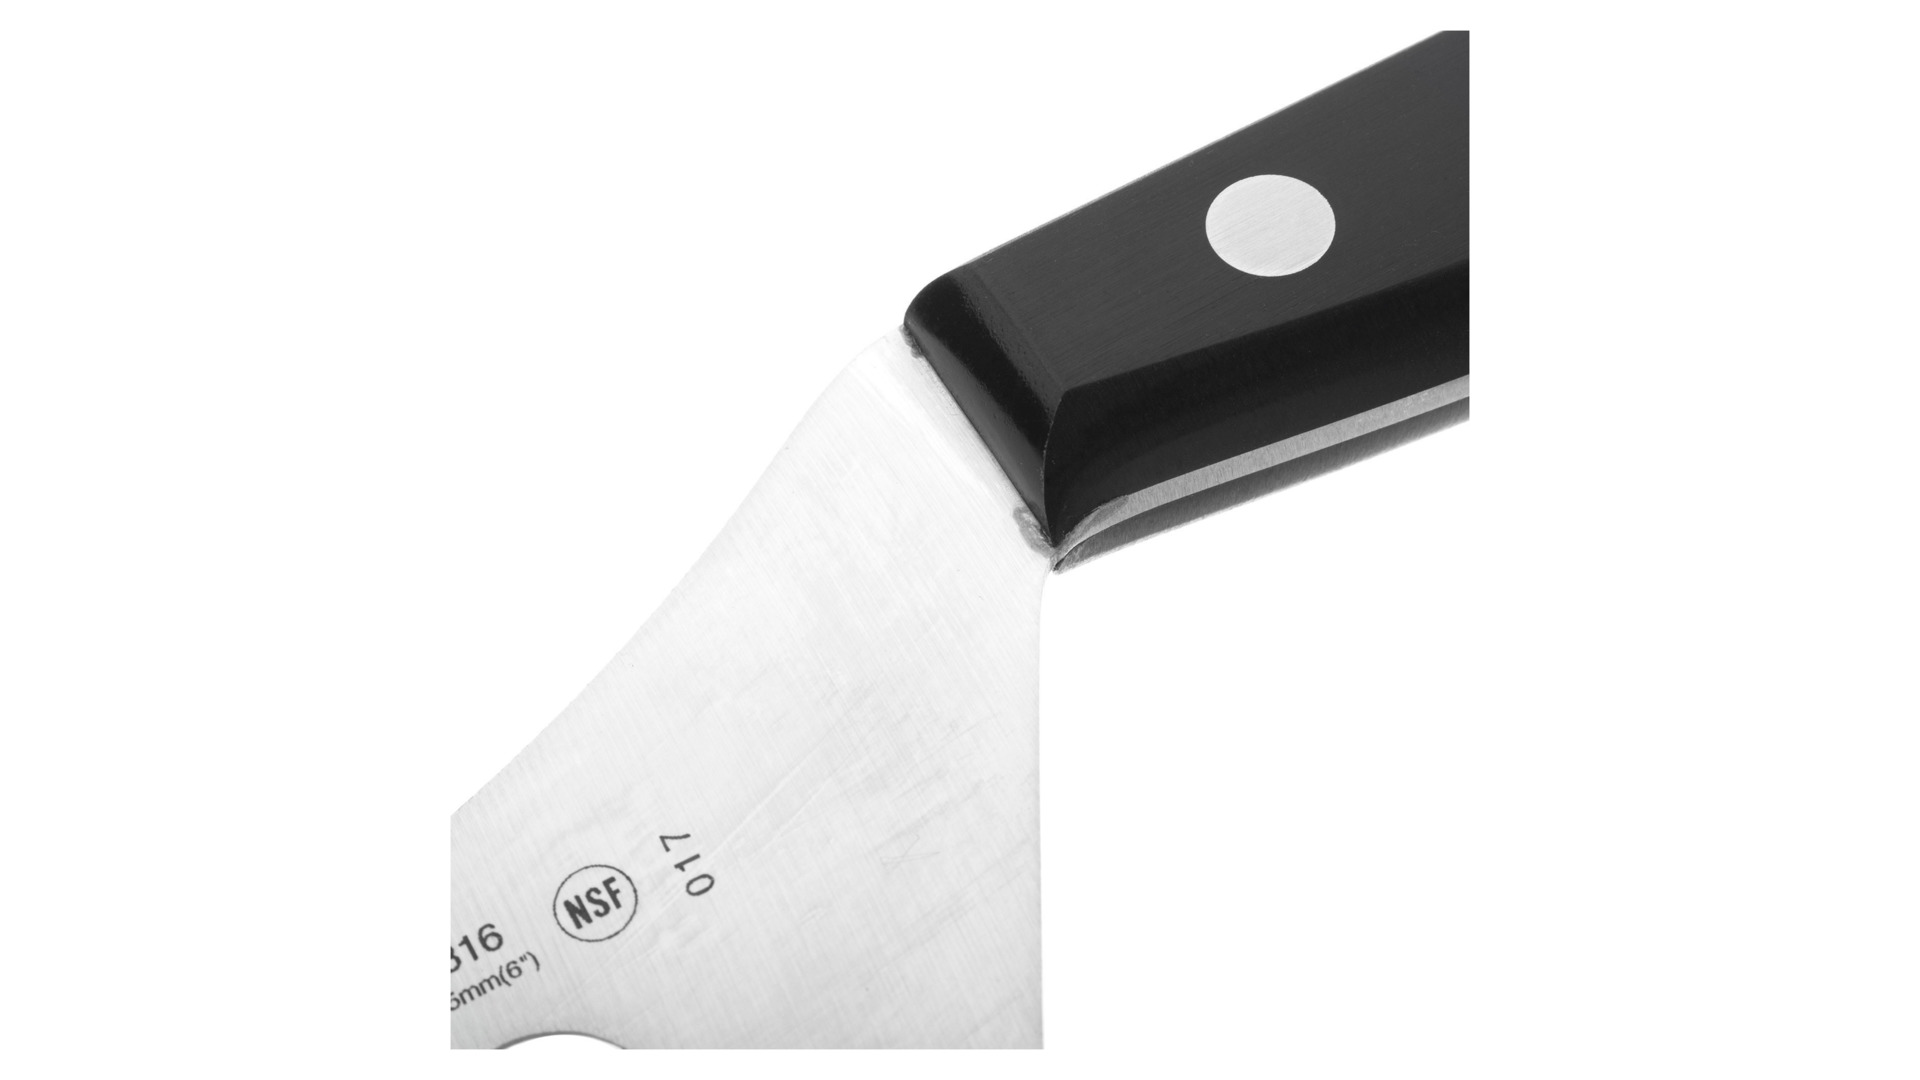 Нож для сыра Arcos Universal 14,5 см